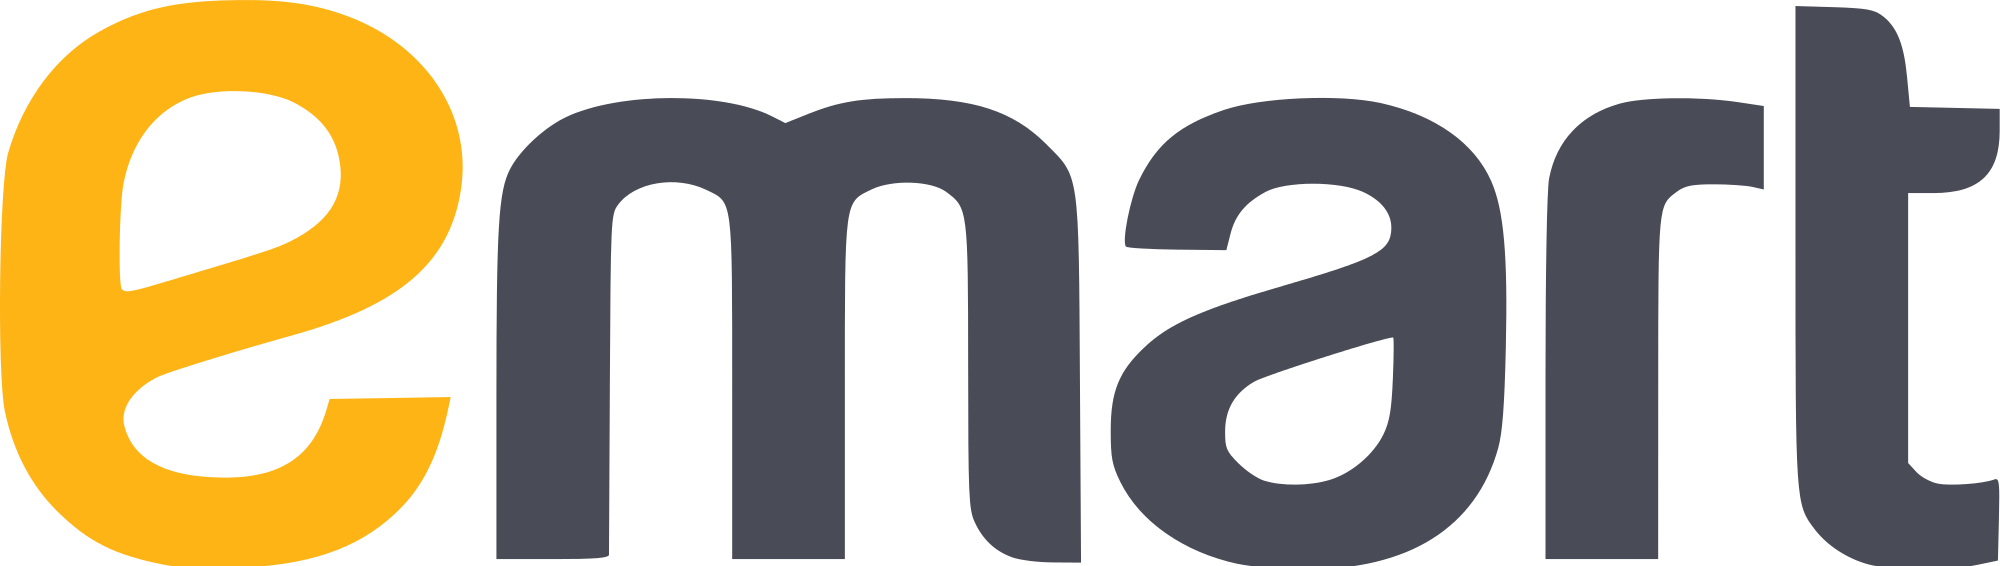 E-Mart Brand Logo